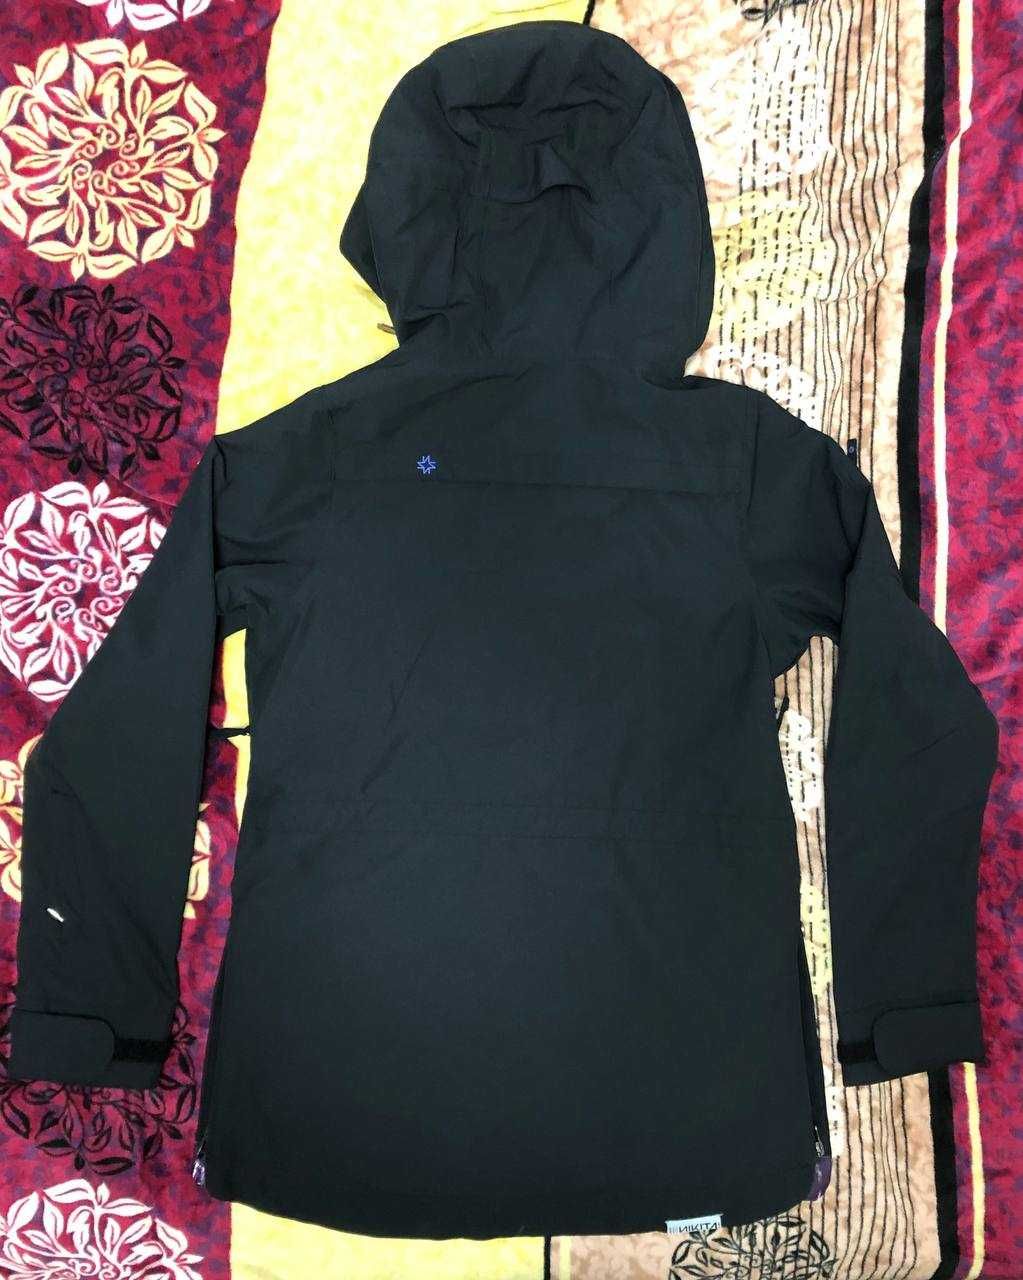 Сноубордическая лыжная куртка анорак женская Nikita 10К (XS, S)